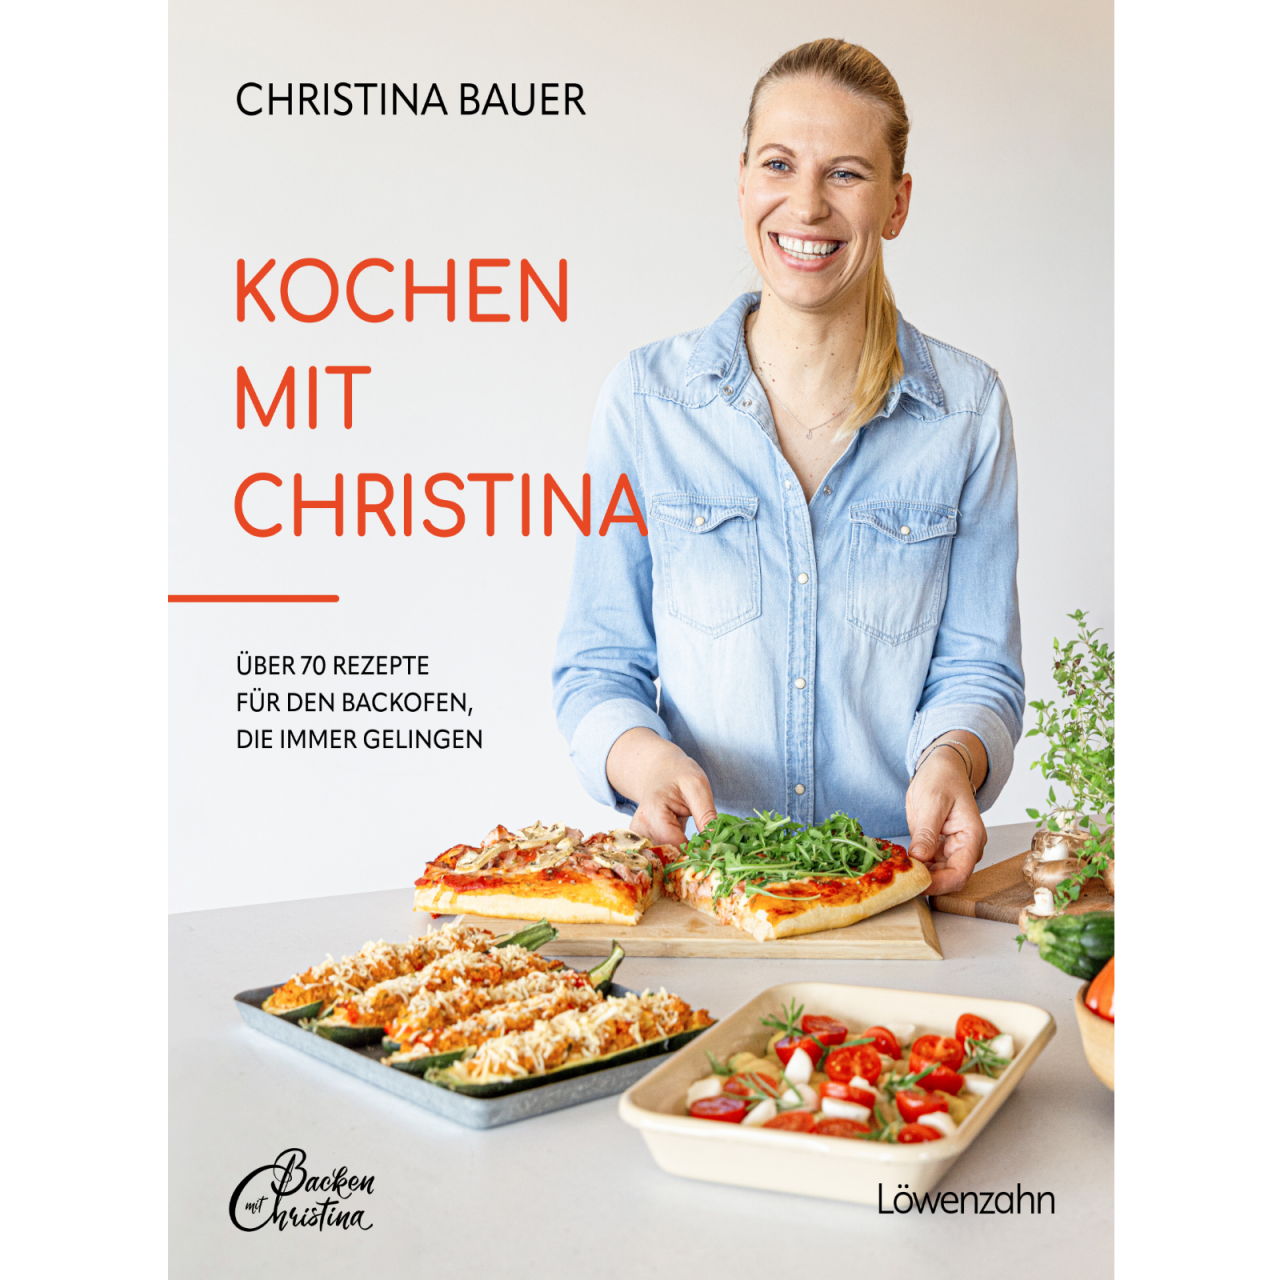 Kochen mit Christina